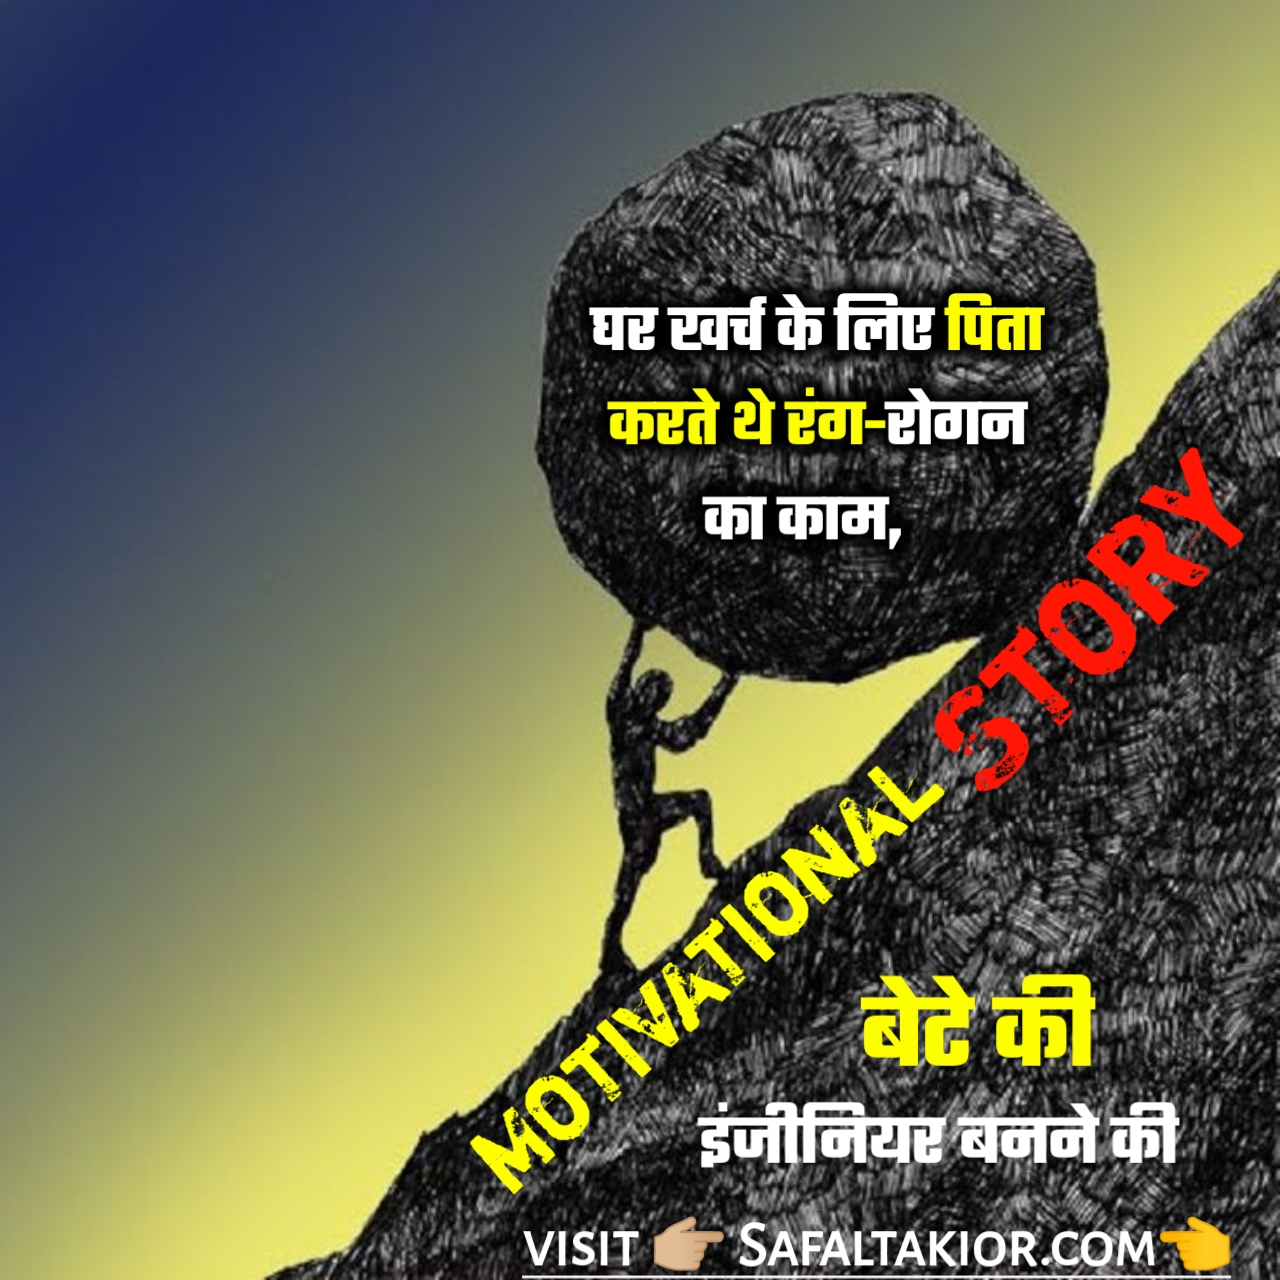 संघर्ष से सफलता की कहानी Successful Story Hindi —Success stories in Hindi